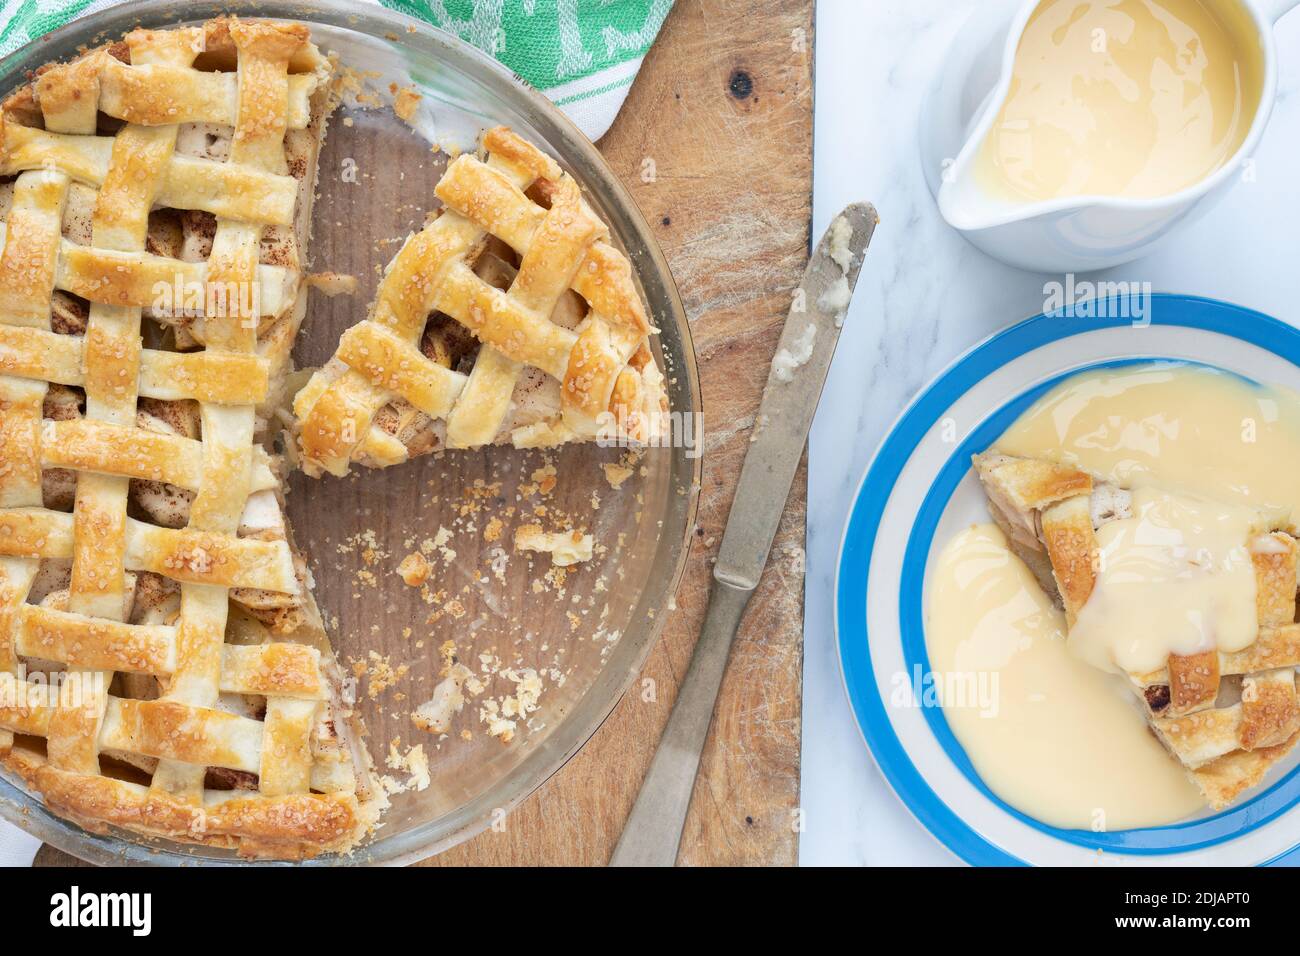 Torta di mele fatta in casa con una torta di pasticceria a graticcio e crema pasticcera Foto Stock